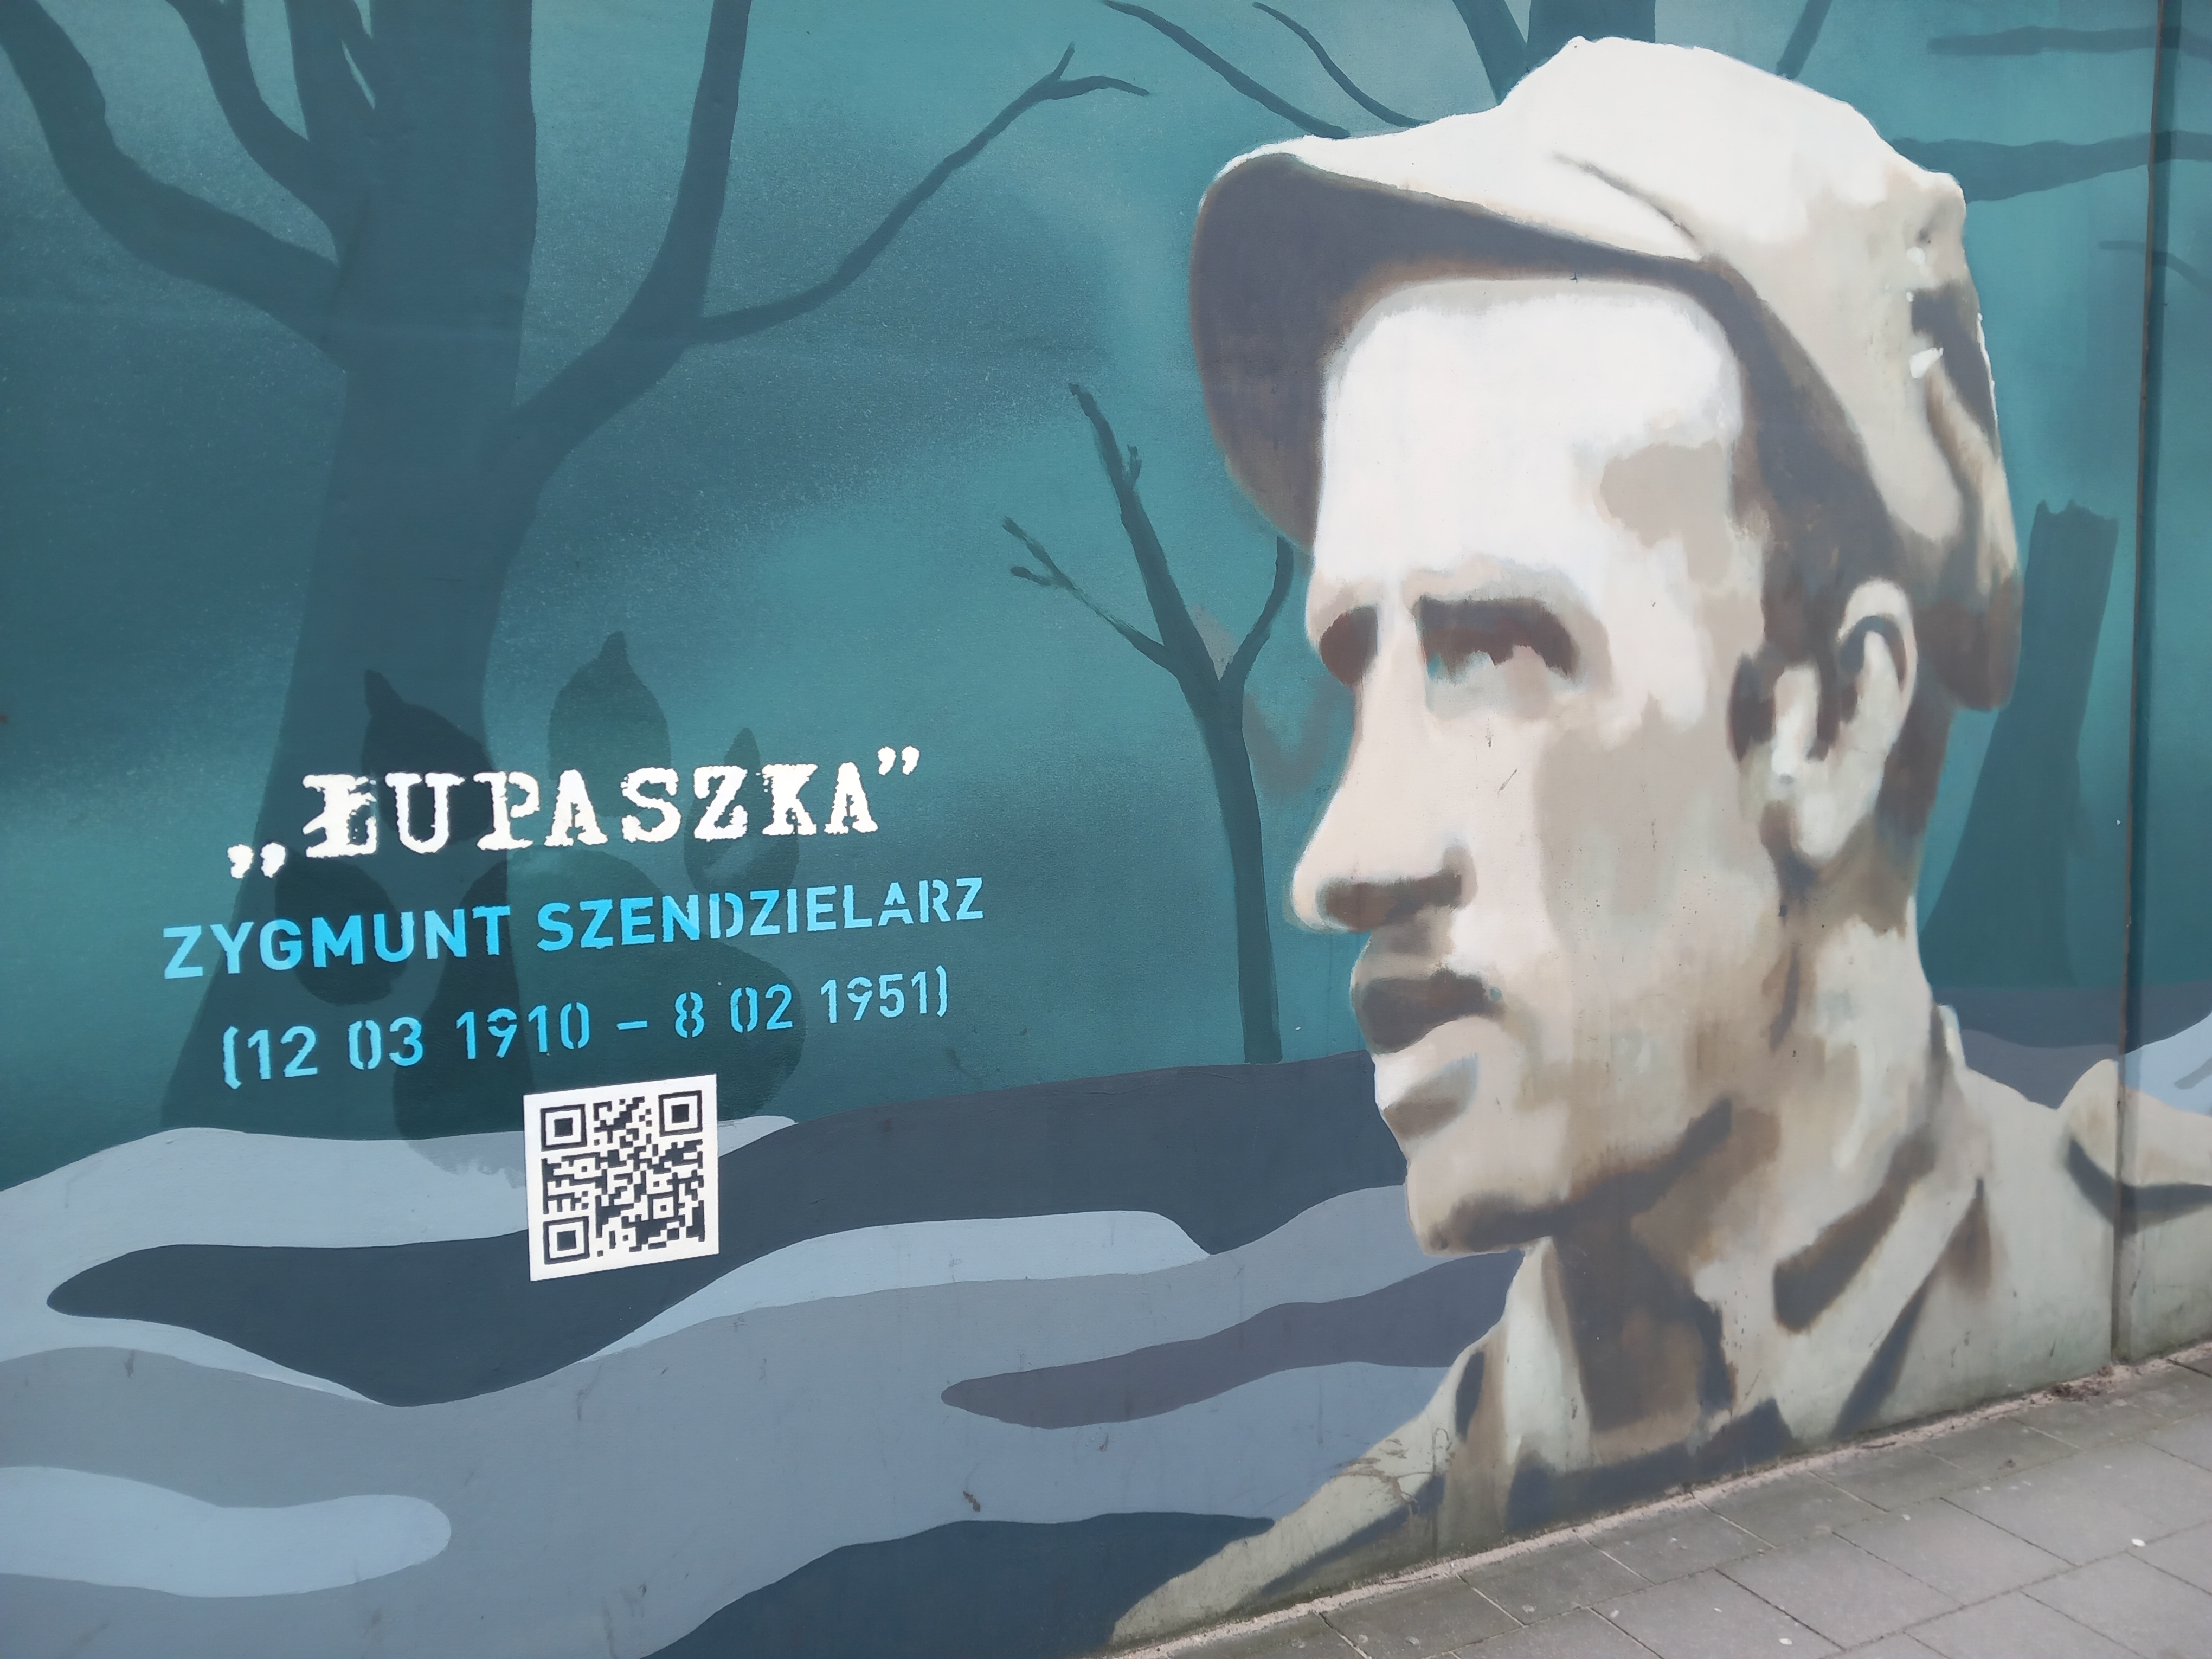 Fragment muralu upamiętniającego żołnierzy 5 Brygady Wileńskiej AK przy al. Żołnierzy Wyklętych w Gdańsku-Wrzeszczu (Fot. Tomasz Neumann).